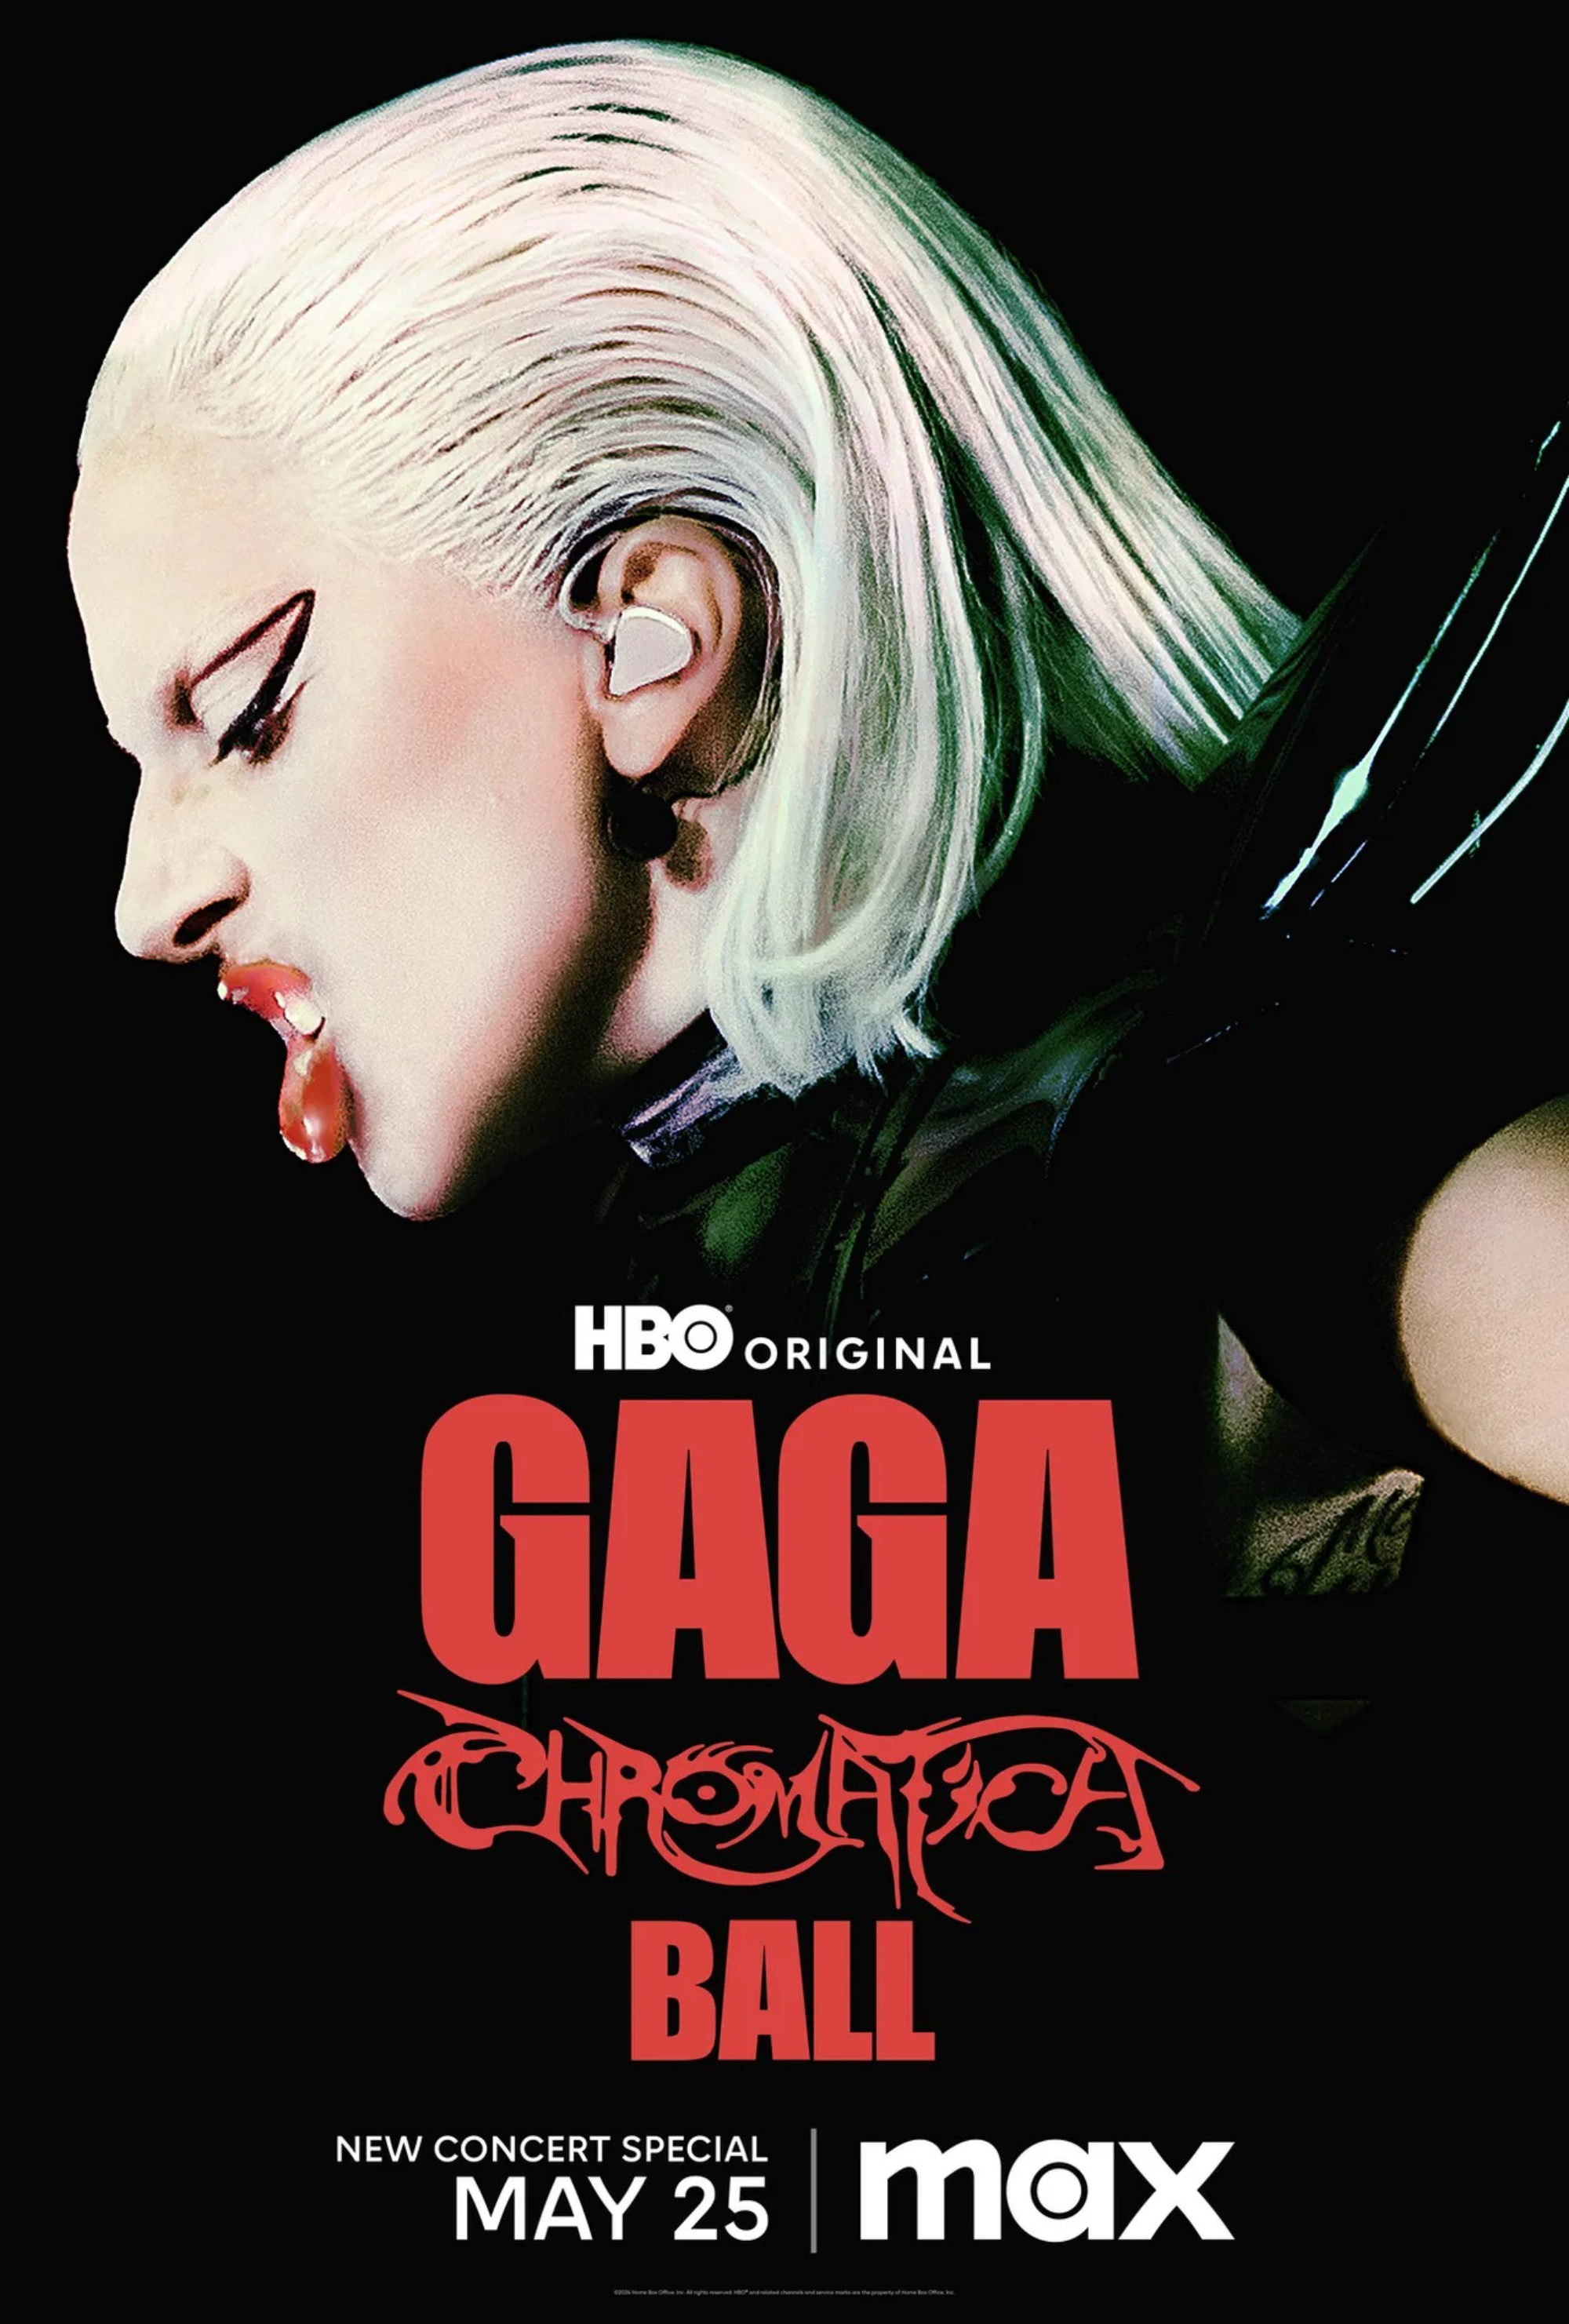 Lady-Gaga-Chromatica-Ball